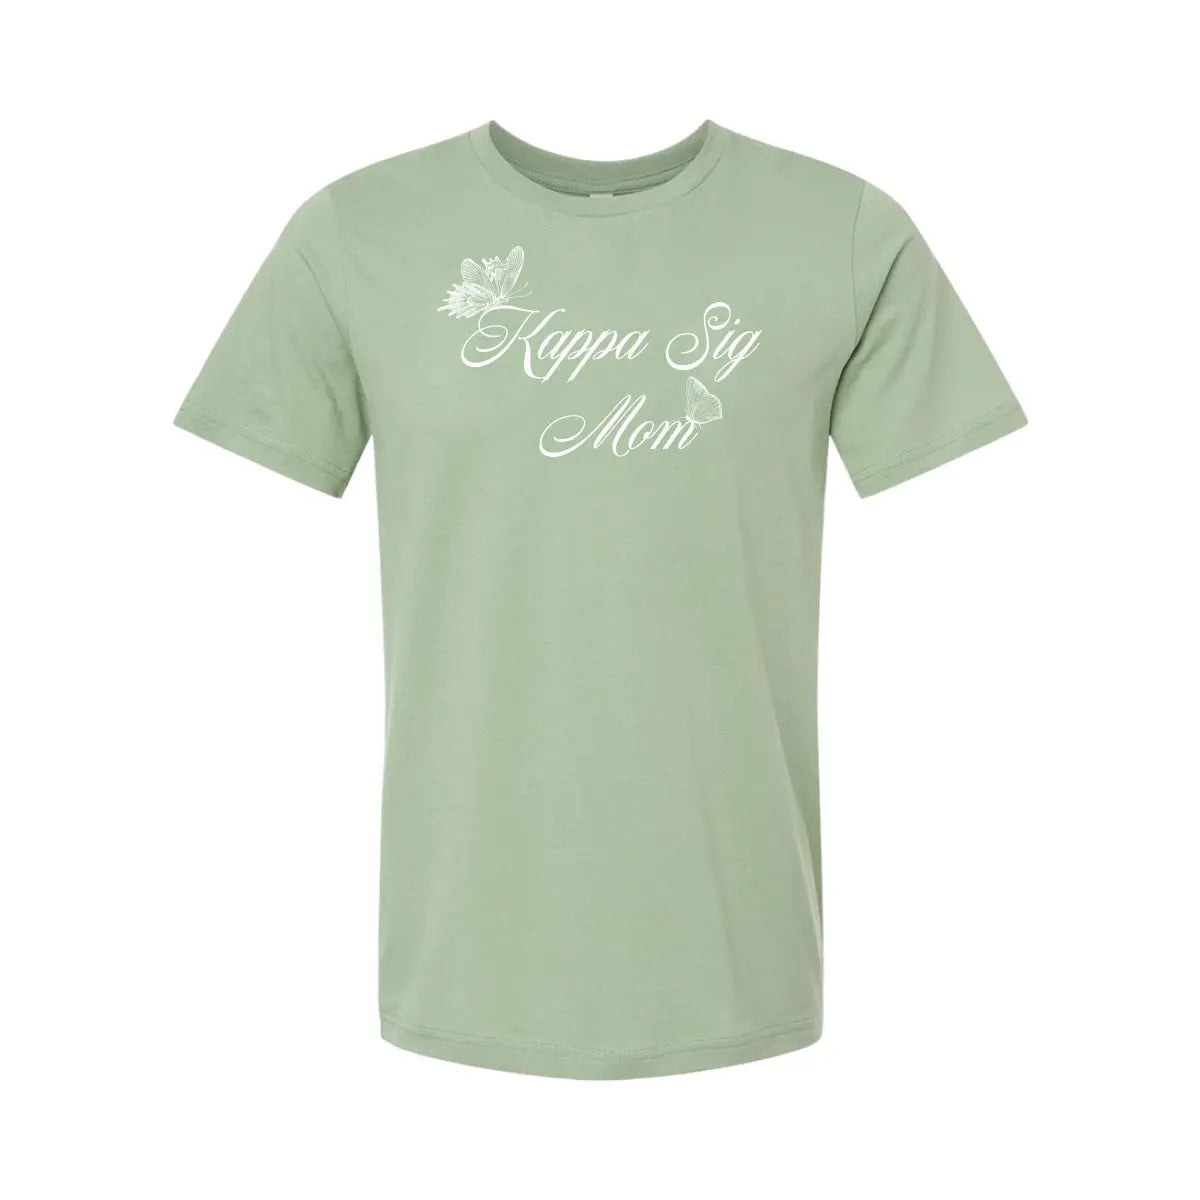 Kappa Sig Sage Green Mom Tee - Kappa Sigma Official Store